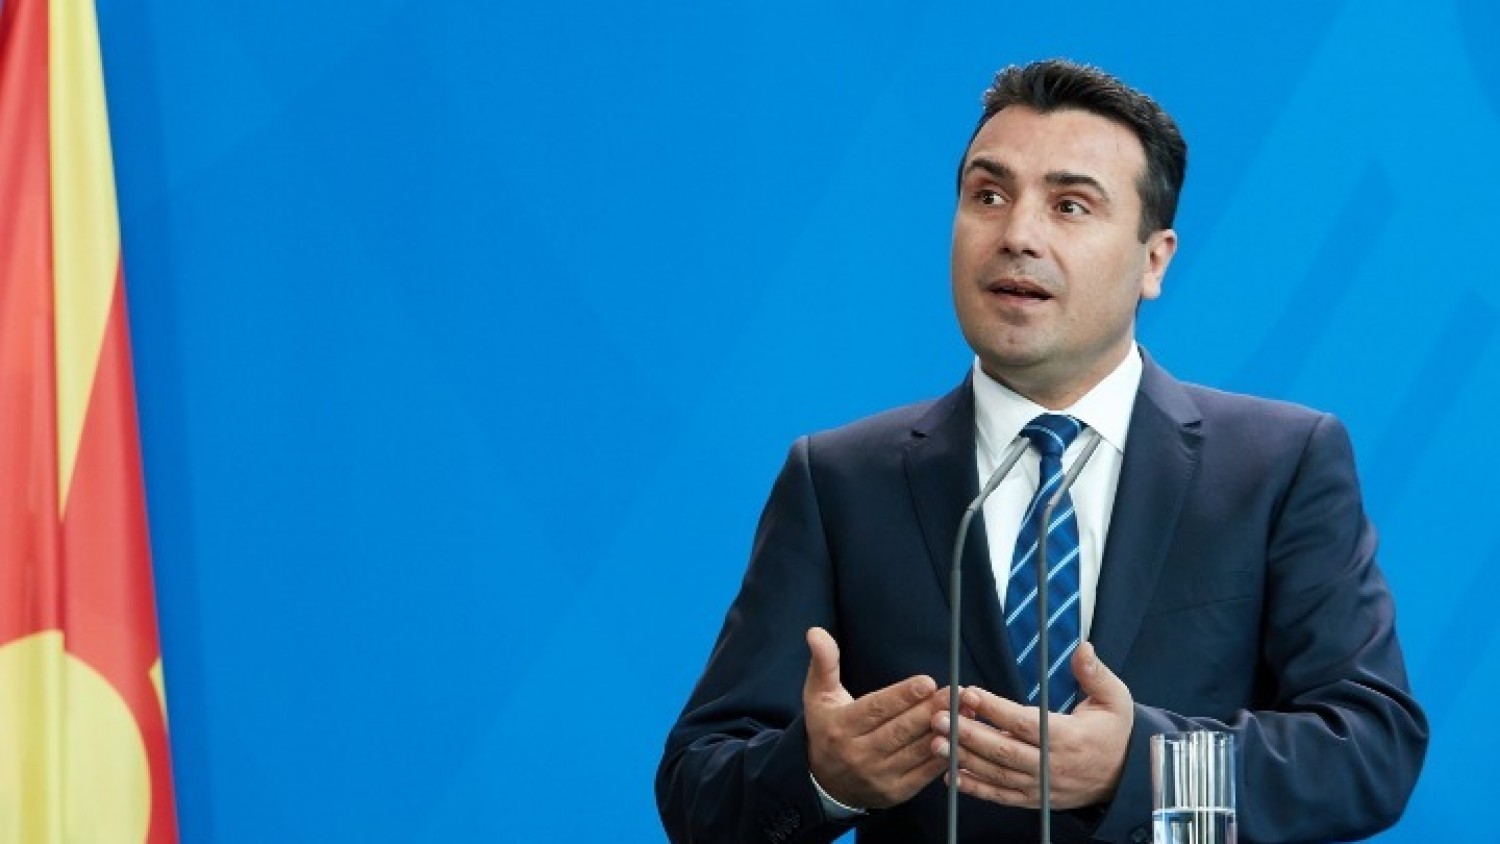 Ζάεφ: «Με ”Οχι” στο δημοψήφισμα ακυρώνεται η Συμφωνία των Πρεσπών»